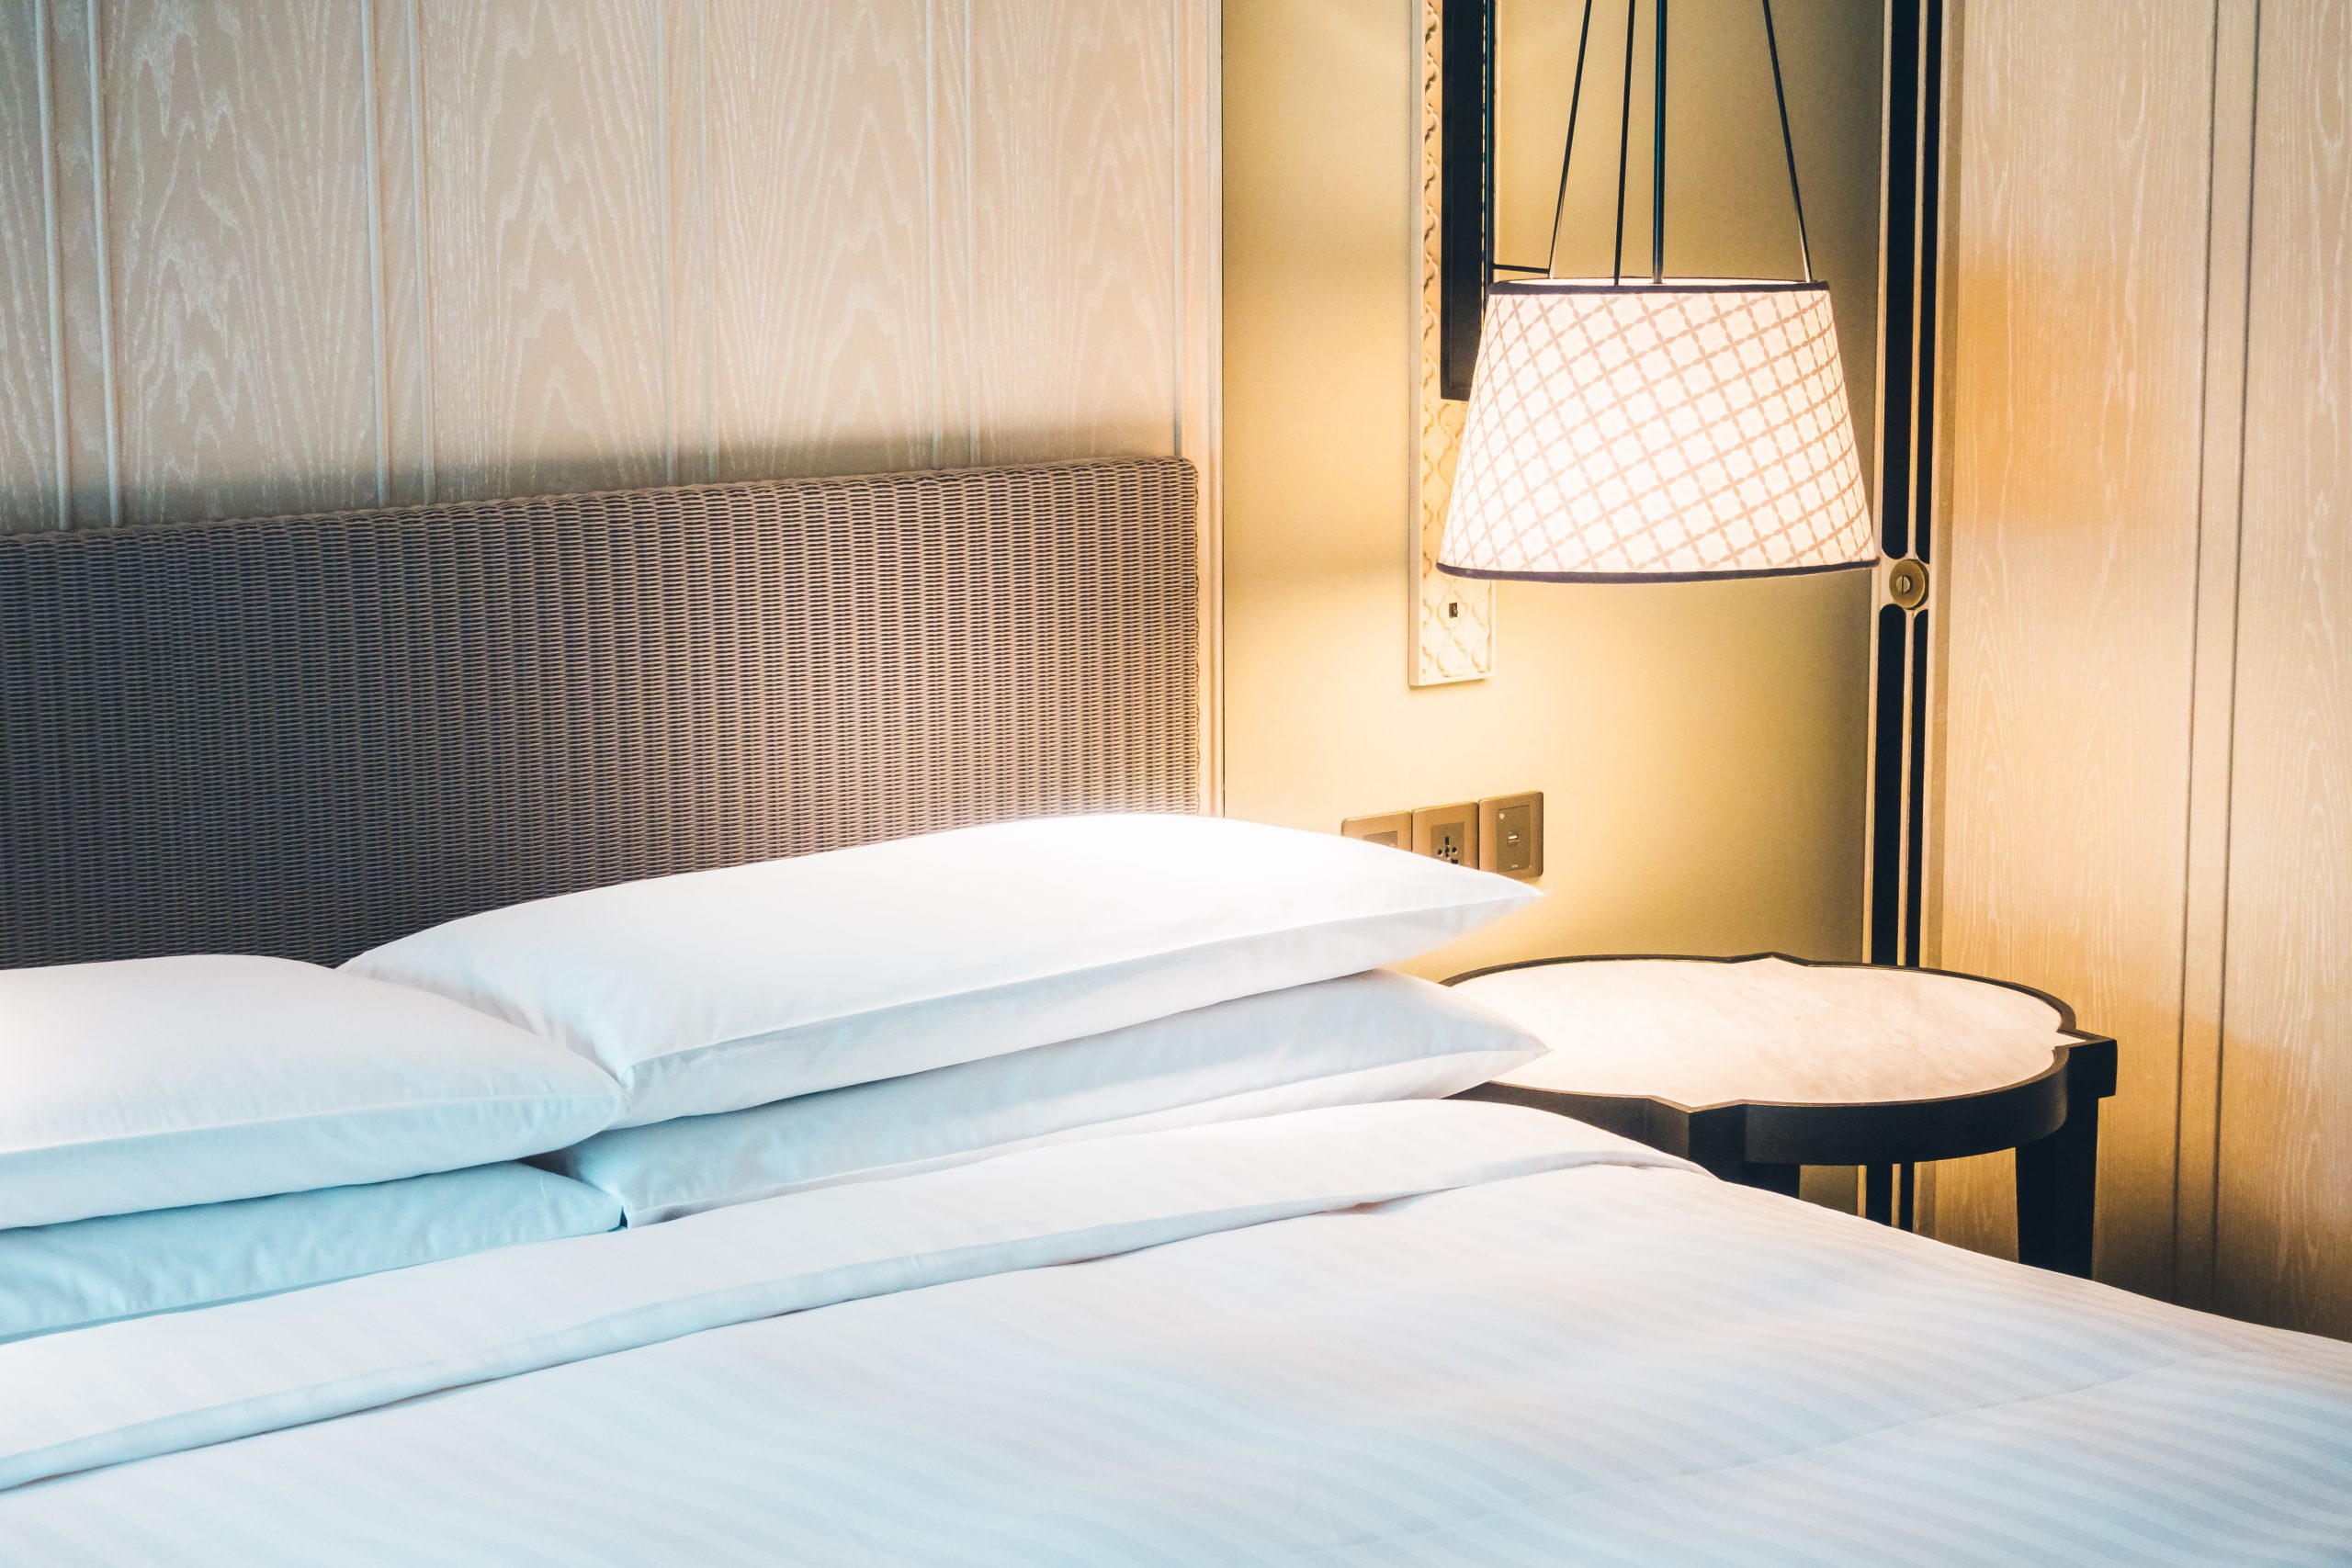 מהרהיטים השימושיים בחדר השינה: איך בוחרים שידות לצד המיטה?